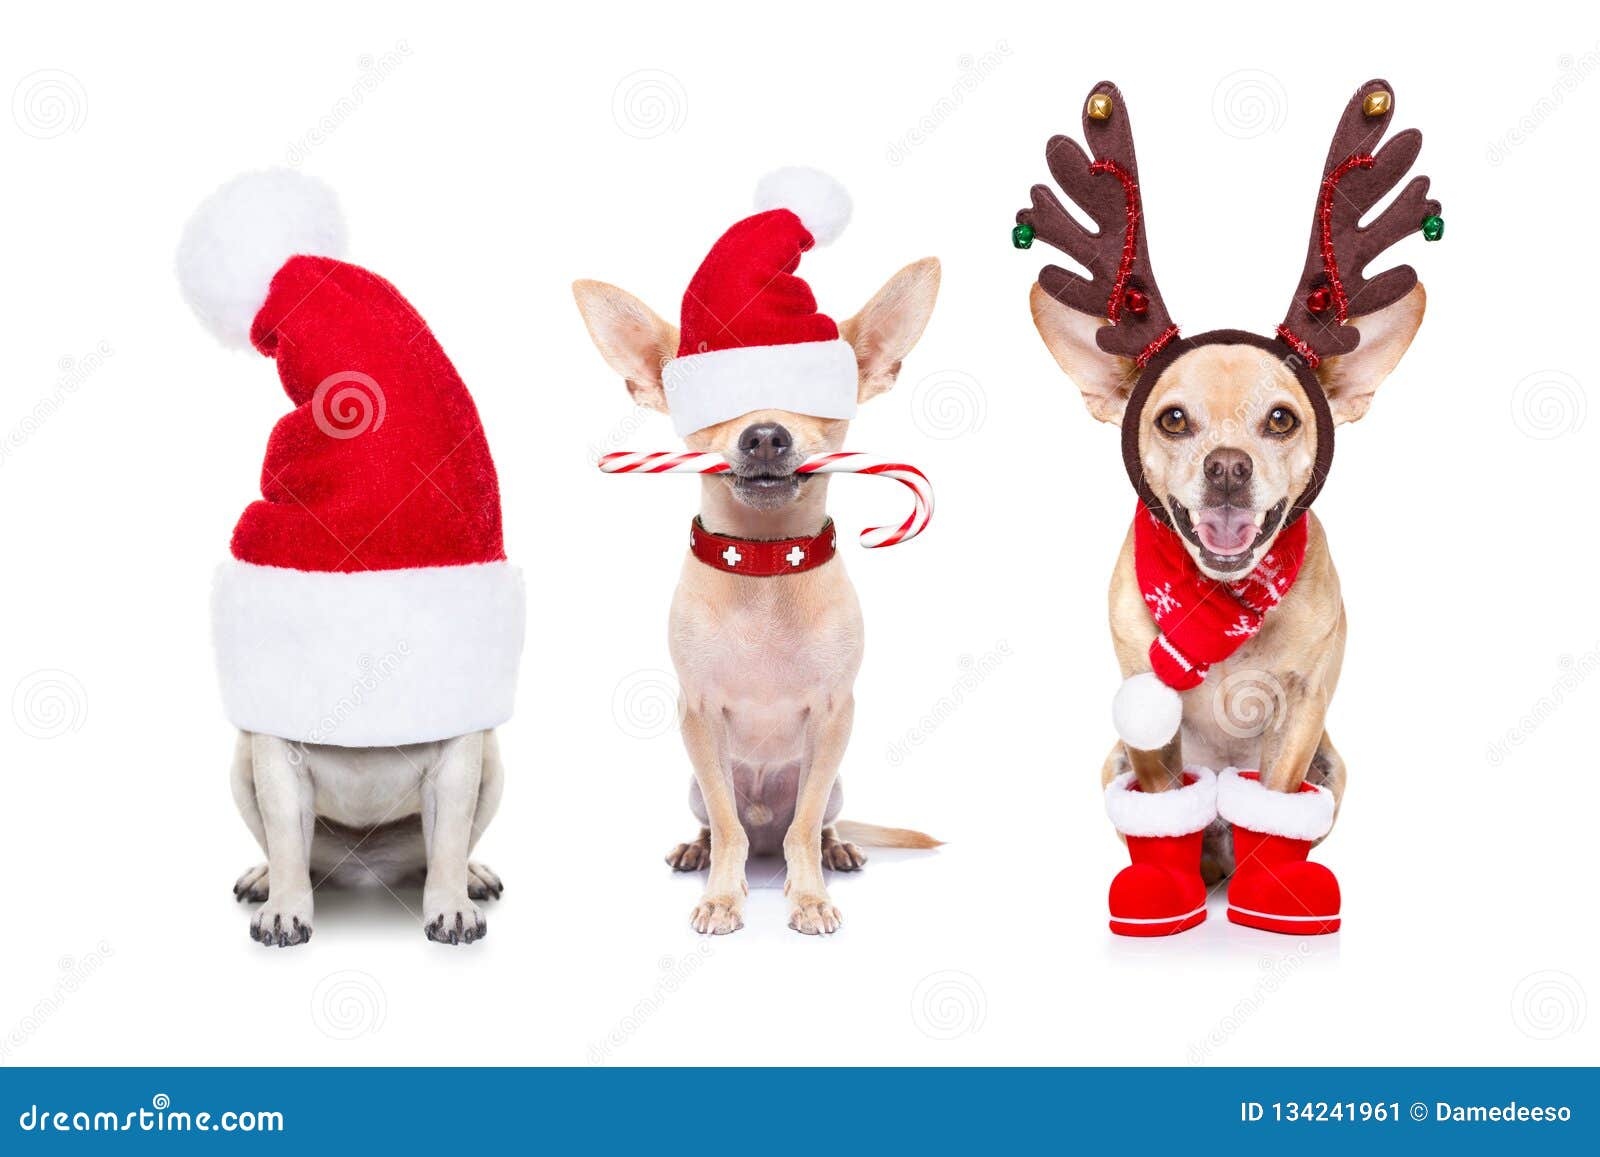 Christmas Dogs: Những chú chó trong trang phục Giáng sinh xinh đẹp sẽ khiến bạn cười toe toét. Chúng rất hài hước và đáng yêu, và khiến cho không khí tết trở nên vui vẻ hơn bao giờ hết.